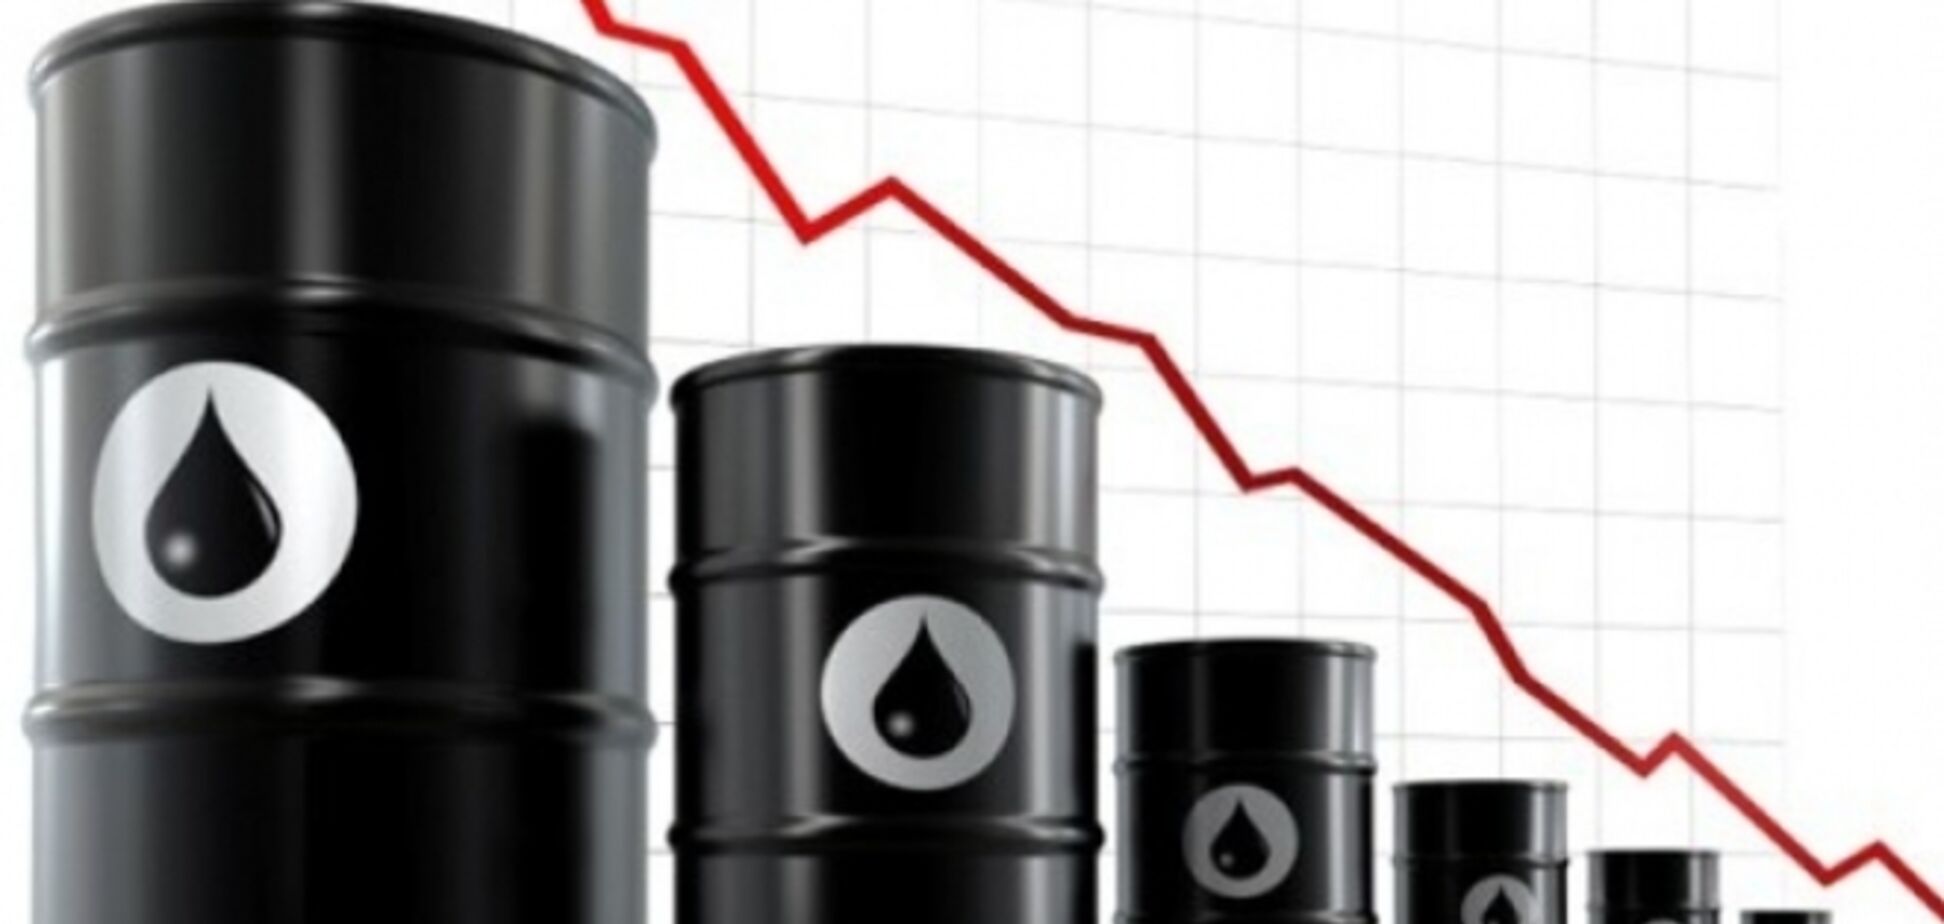 Впервые за пять лет цены на нефть марки Brent рухнули ниже $81 за баррель